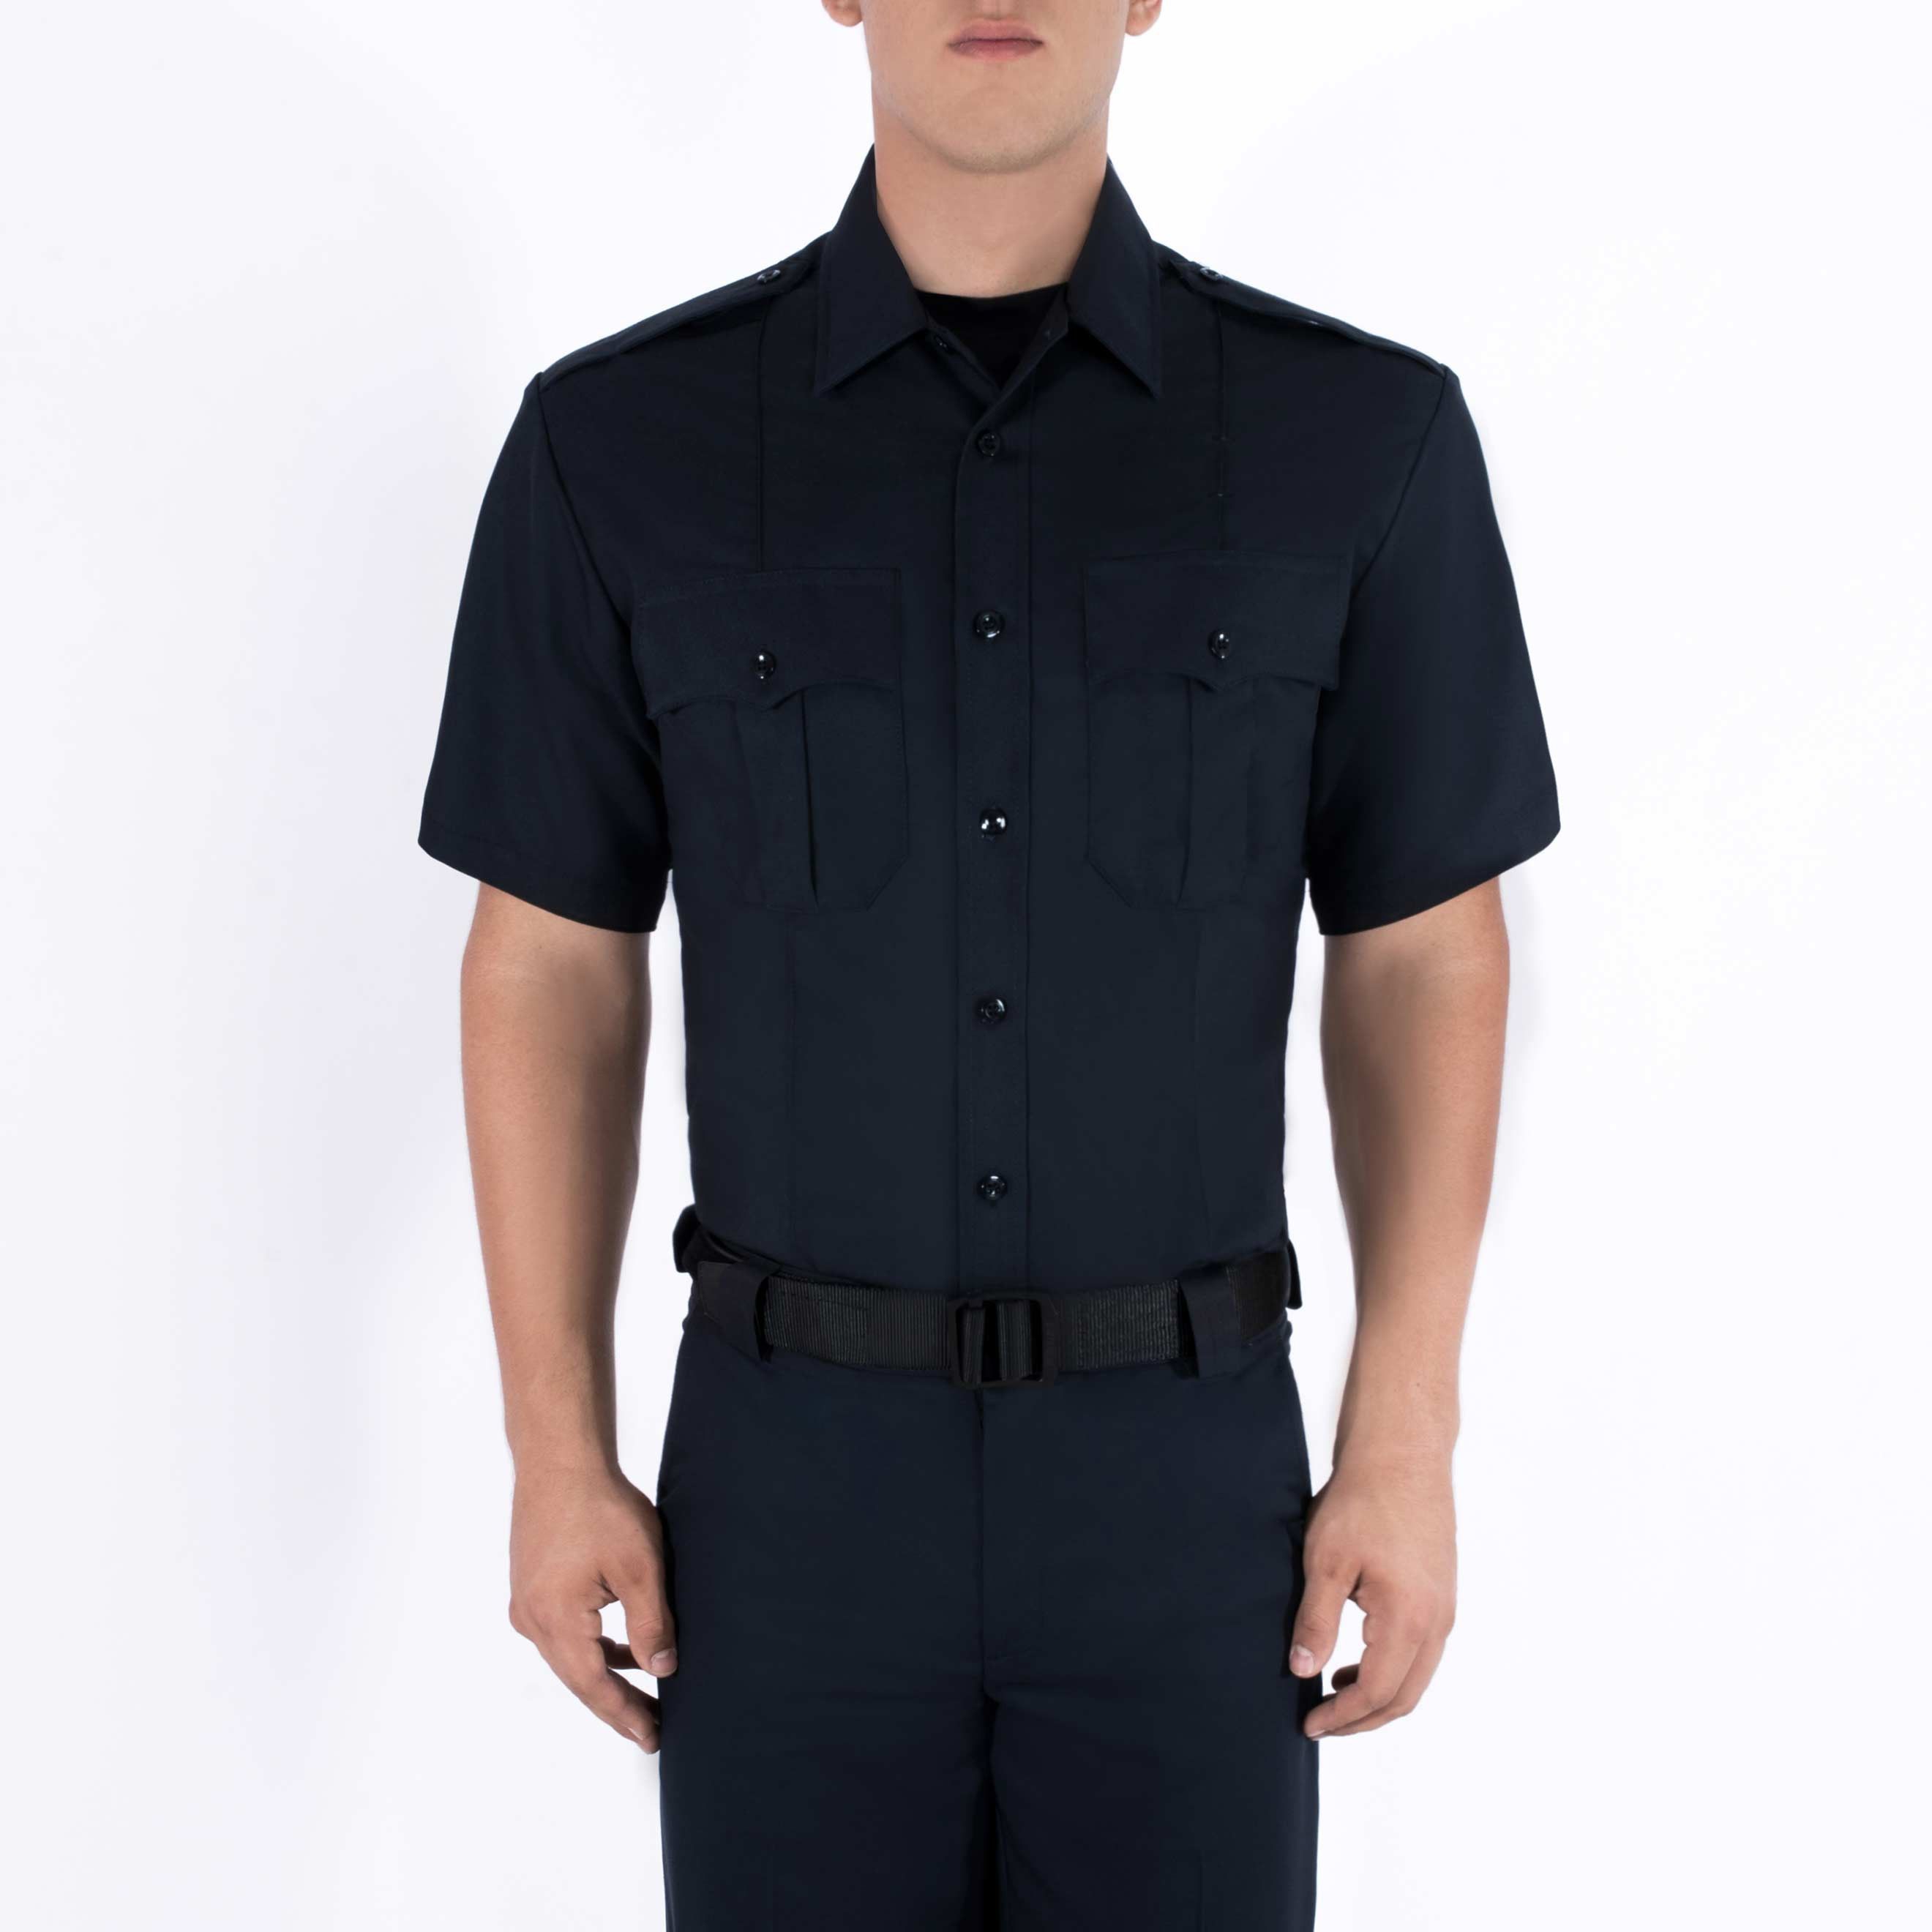 Class A Police Uniform Shirt - Short Sleeve Rayon Shirt - 8910 - Blauer